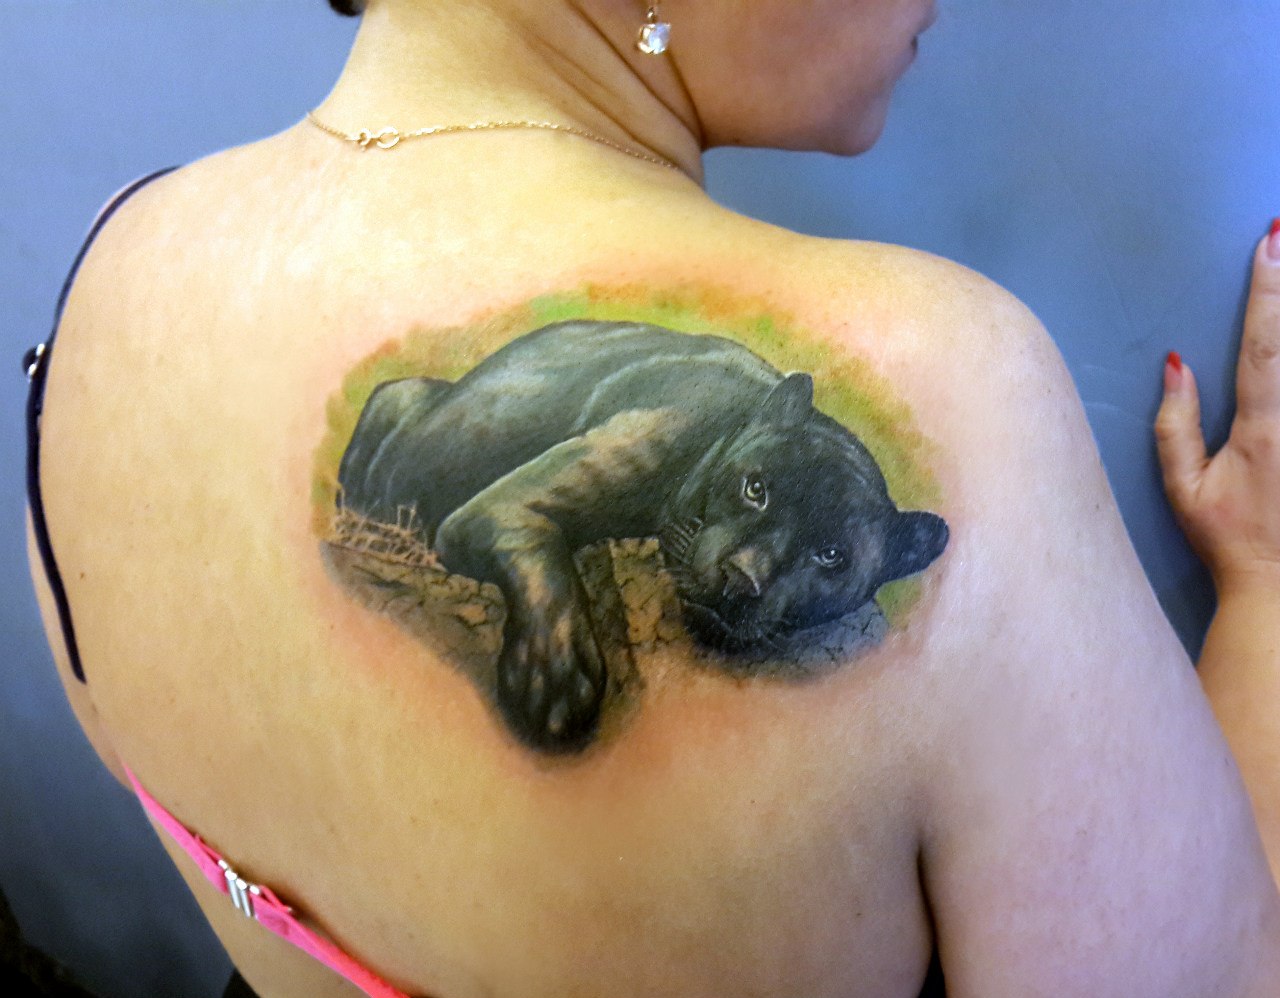 Значение татуировки пантера (60+ фото)